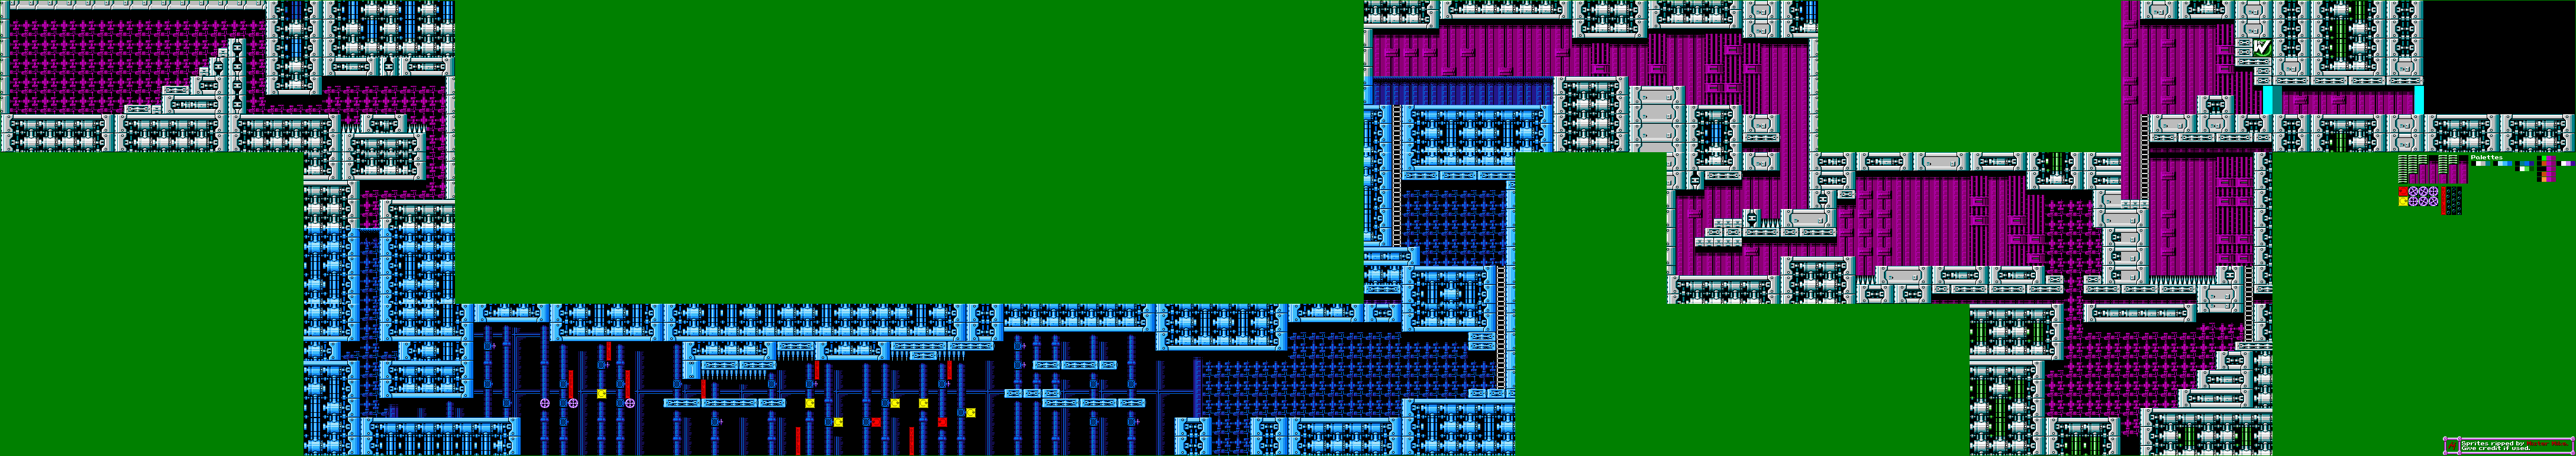 Mega Man 5 - Wily Stage 2